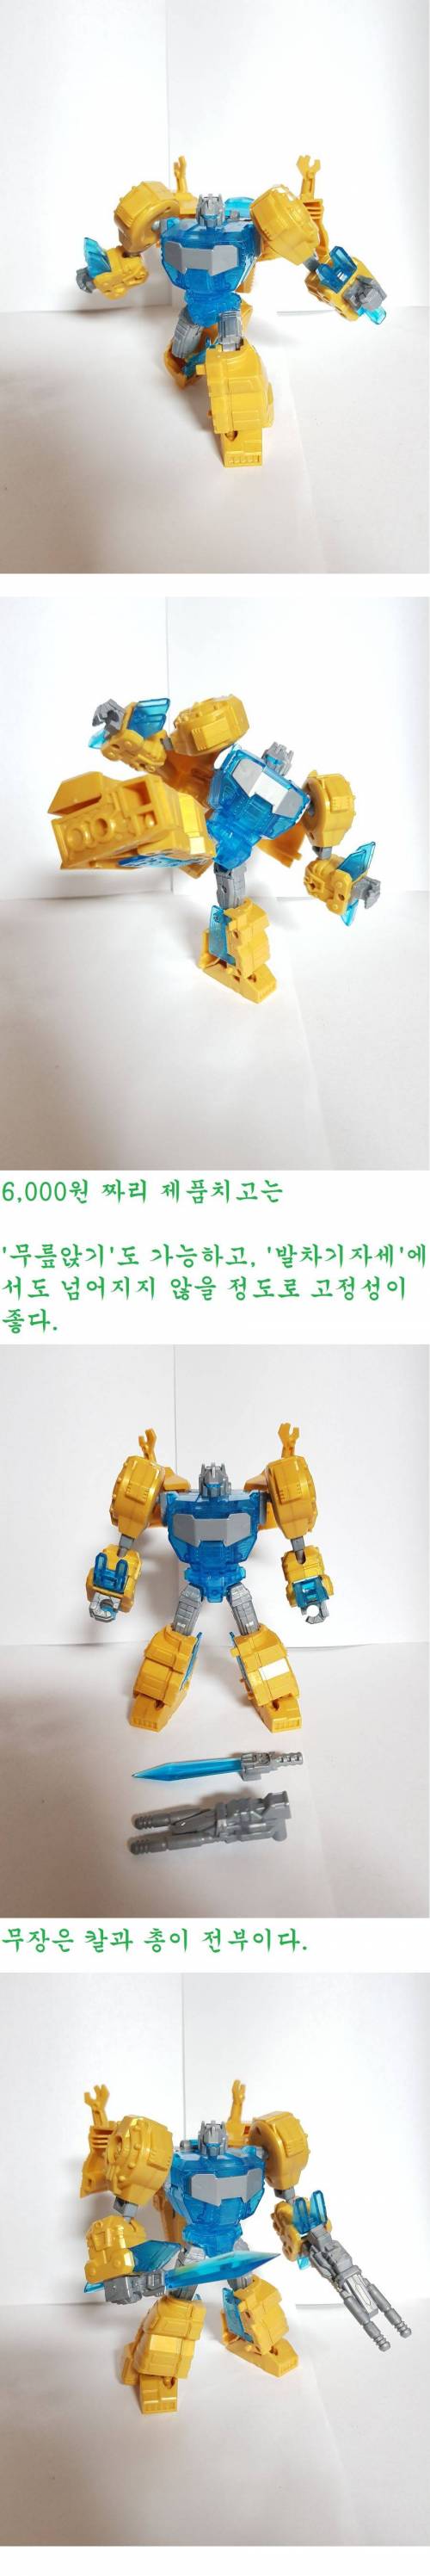 [스압] 동네 6,000원 짜리 변신로봇 프라모델 수준.jpg